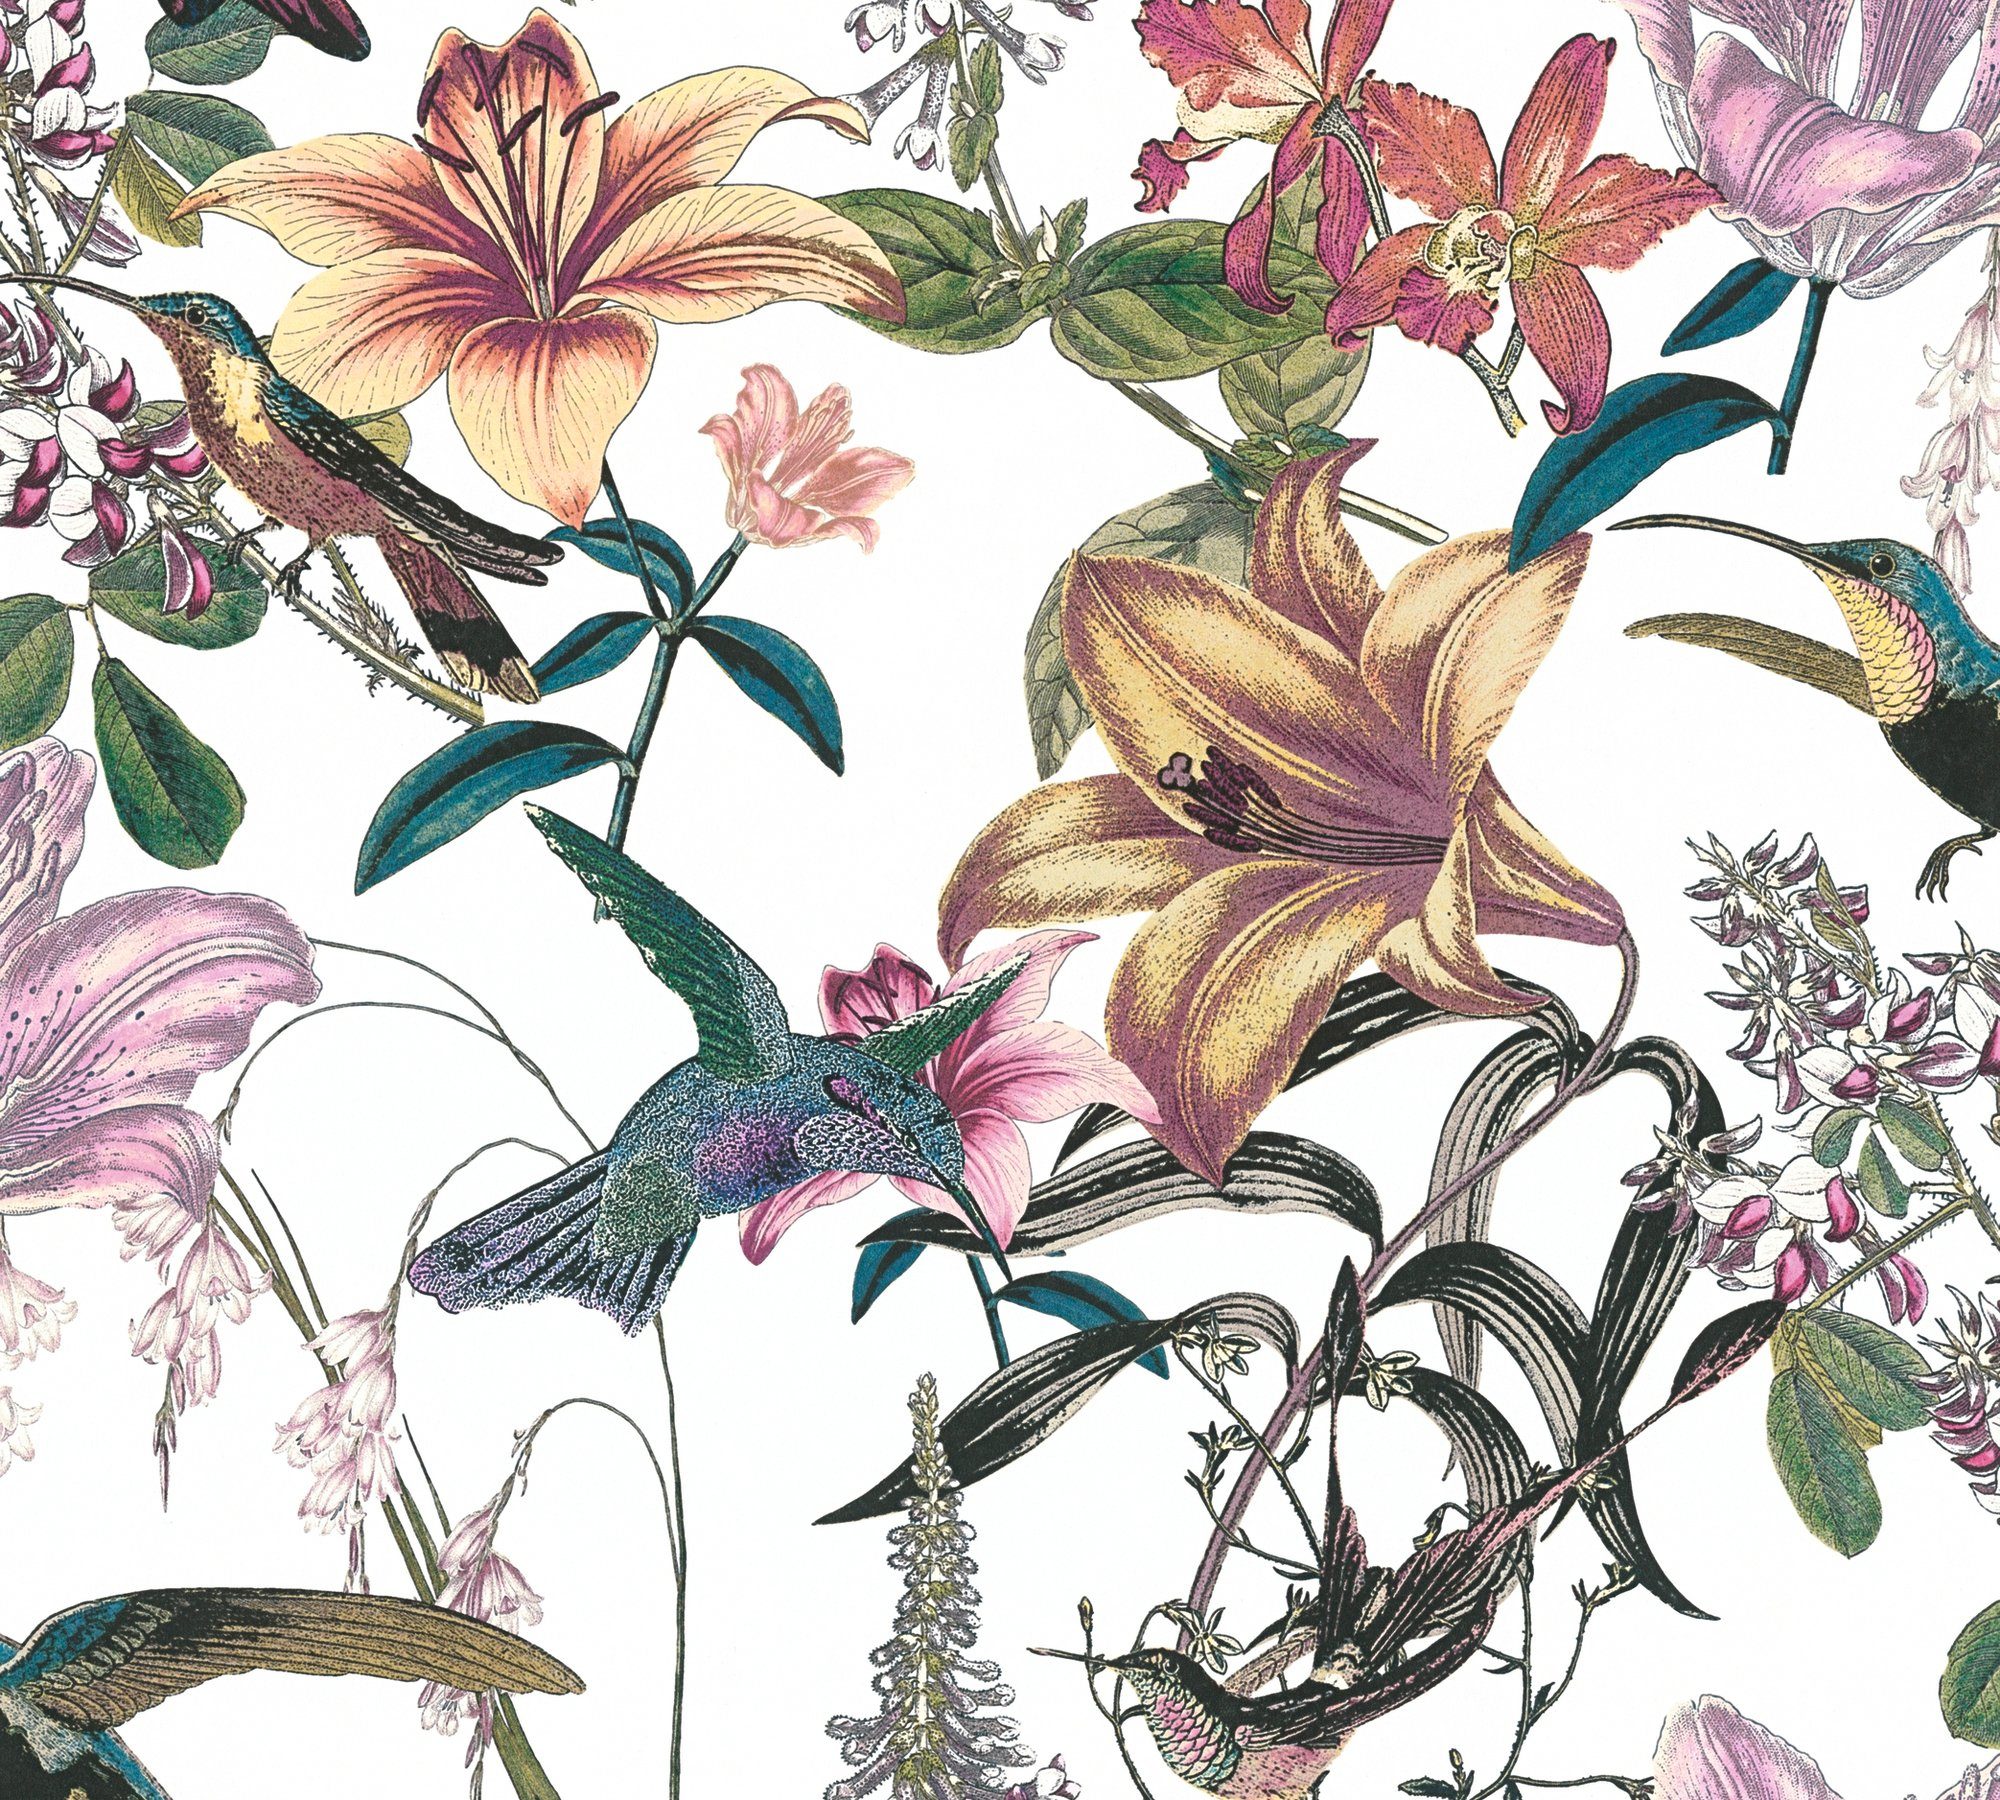 botanisch, floral, glatt, bunt/grün/gelb Tapete Chic, A.S. Création Vogeltapete tropisch, Architects Blumen Paper Vliestapete Jungle